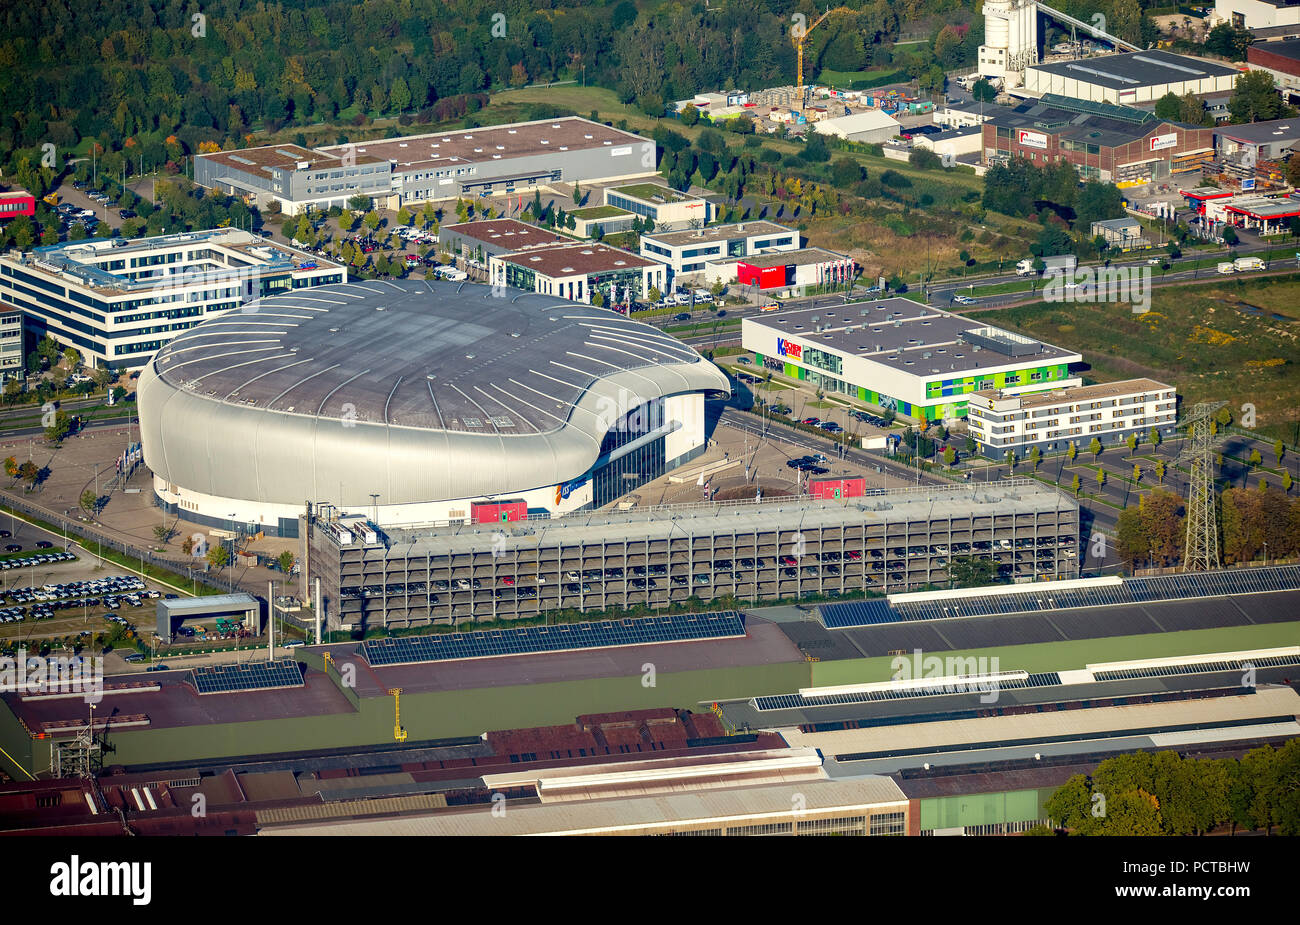 Vista aérea, ISS DOME, gran salón para torneos de hockey sobre hielo y otros eventos deportivos, así como conciertos de rock con estrellas internacionales en Dusseldorf Foto de stock